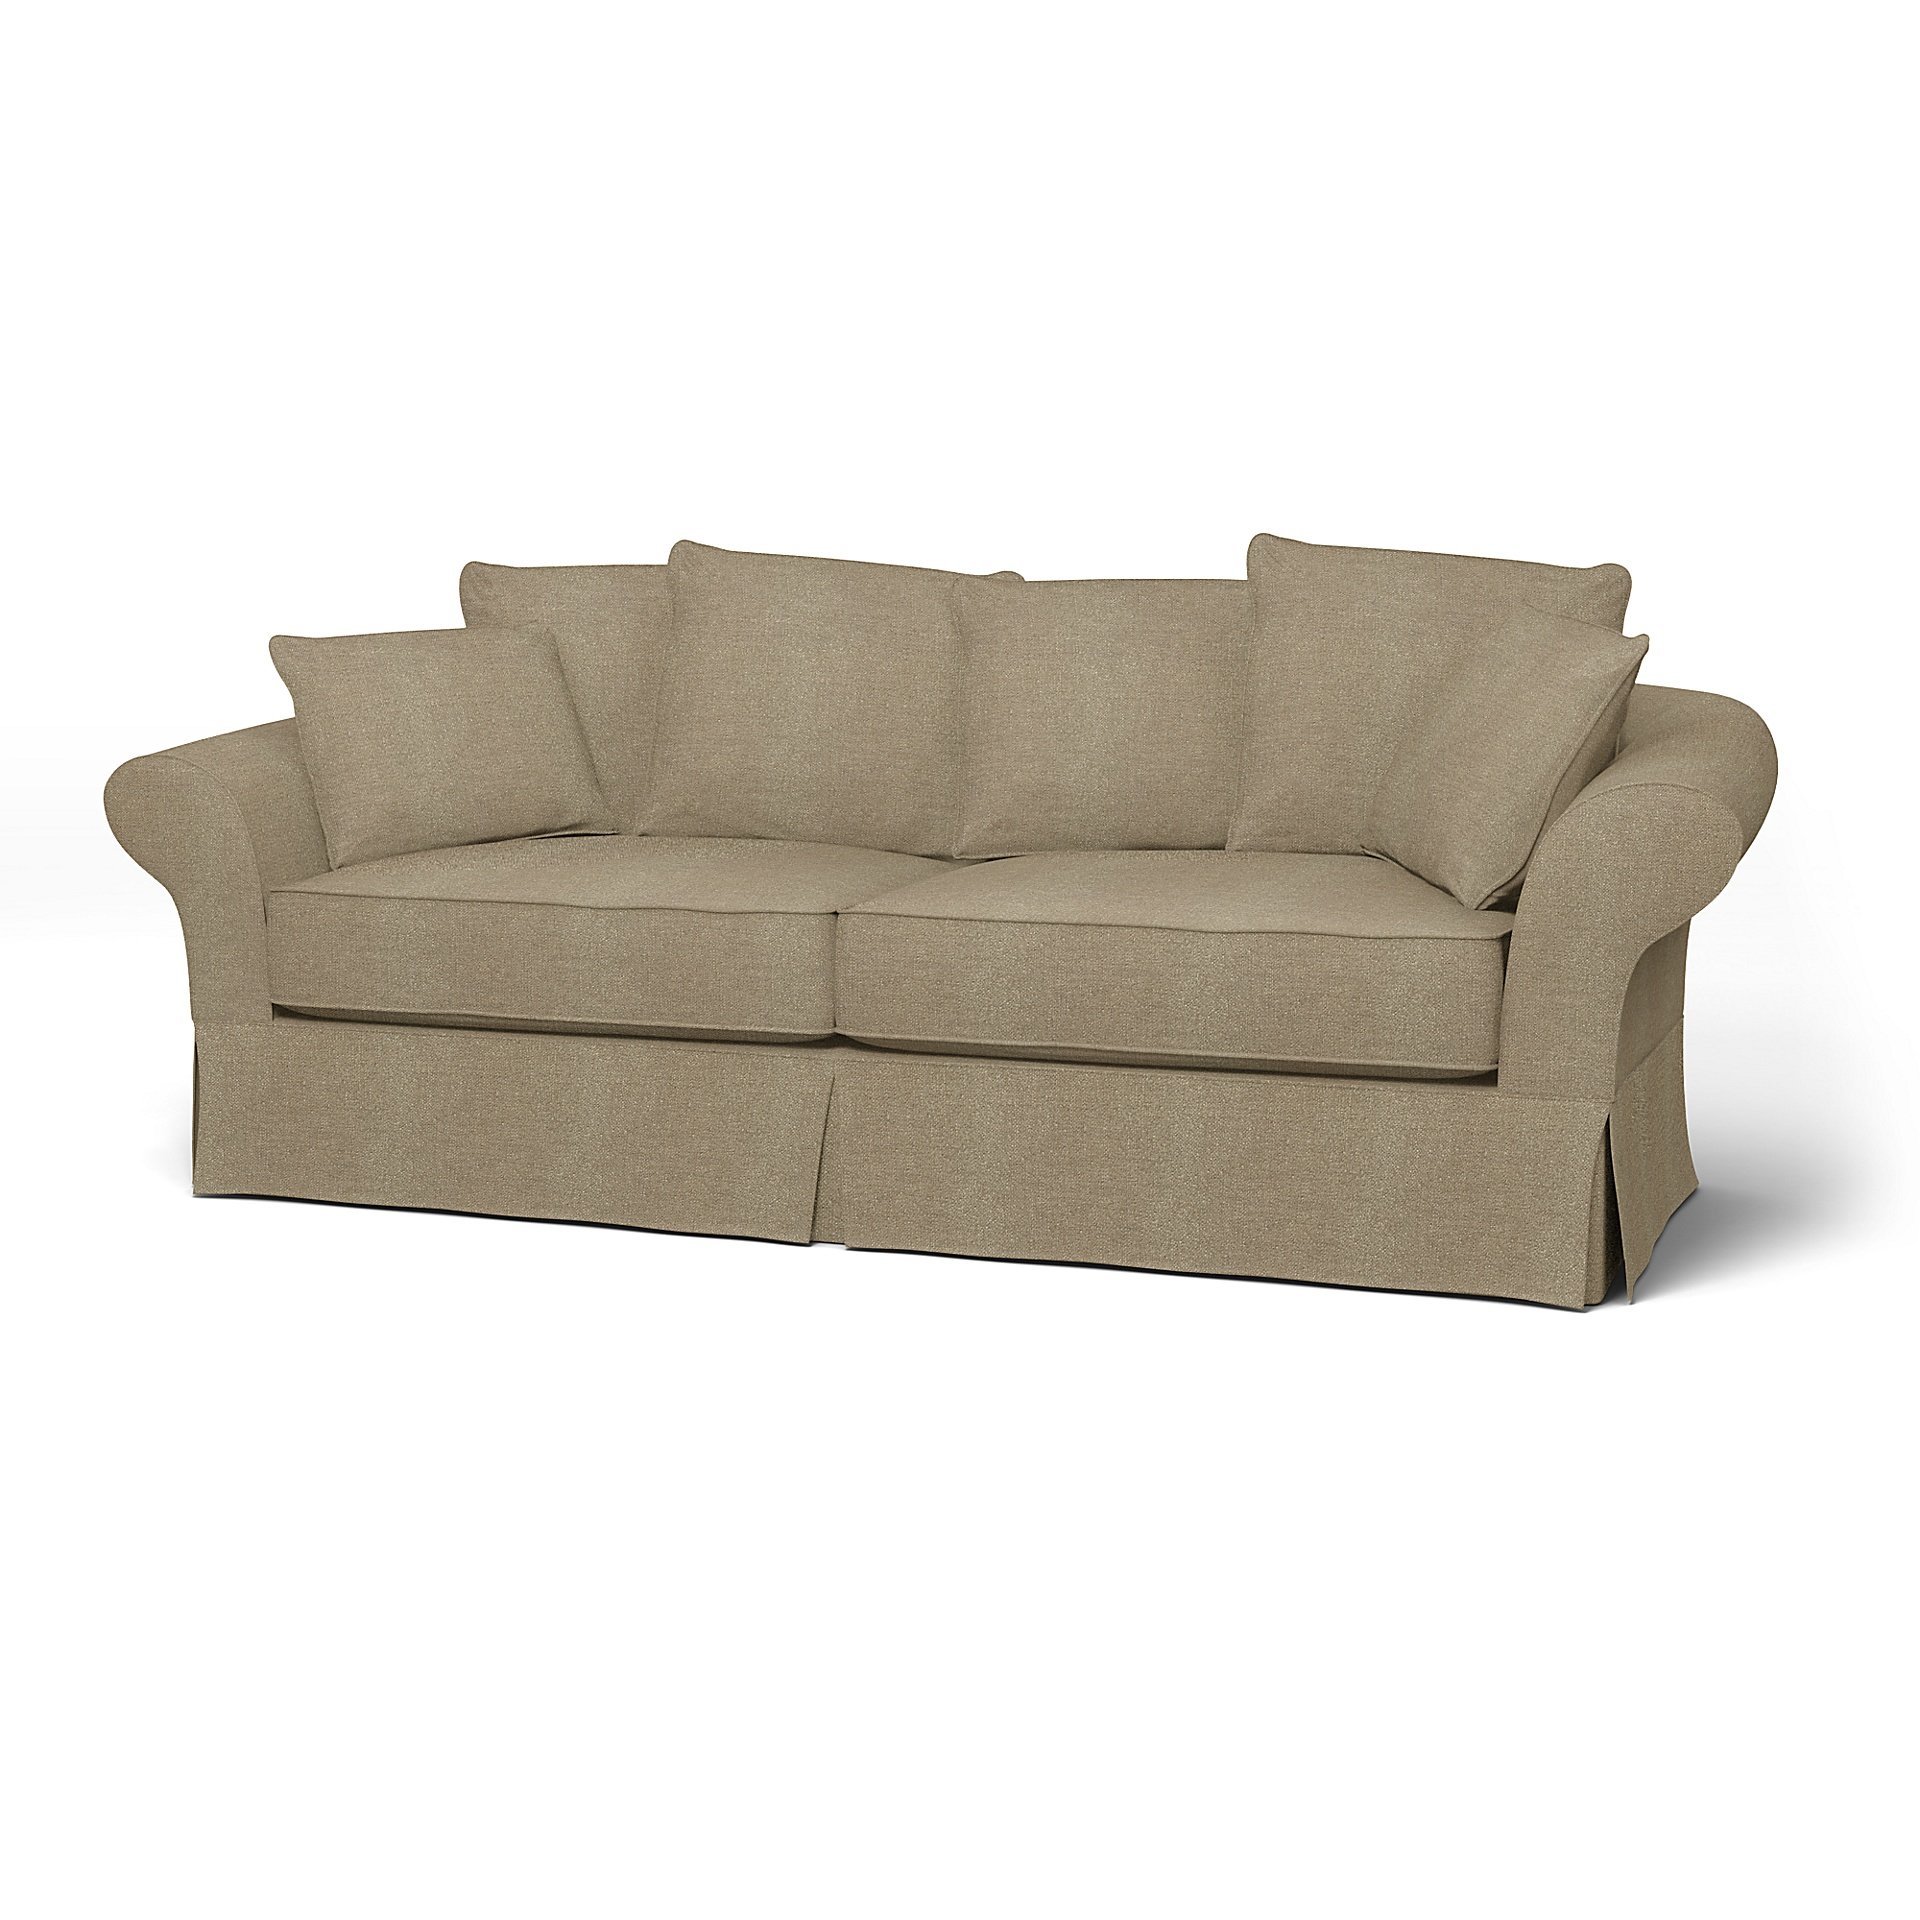 IKEA - Backamo 3 Seater Sofa Cover, Pebble, Boucle & Texture - Bemz